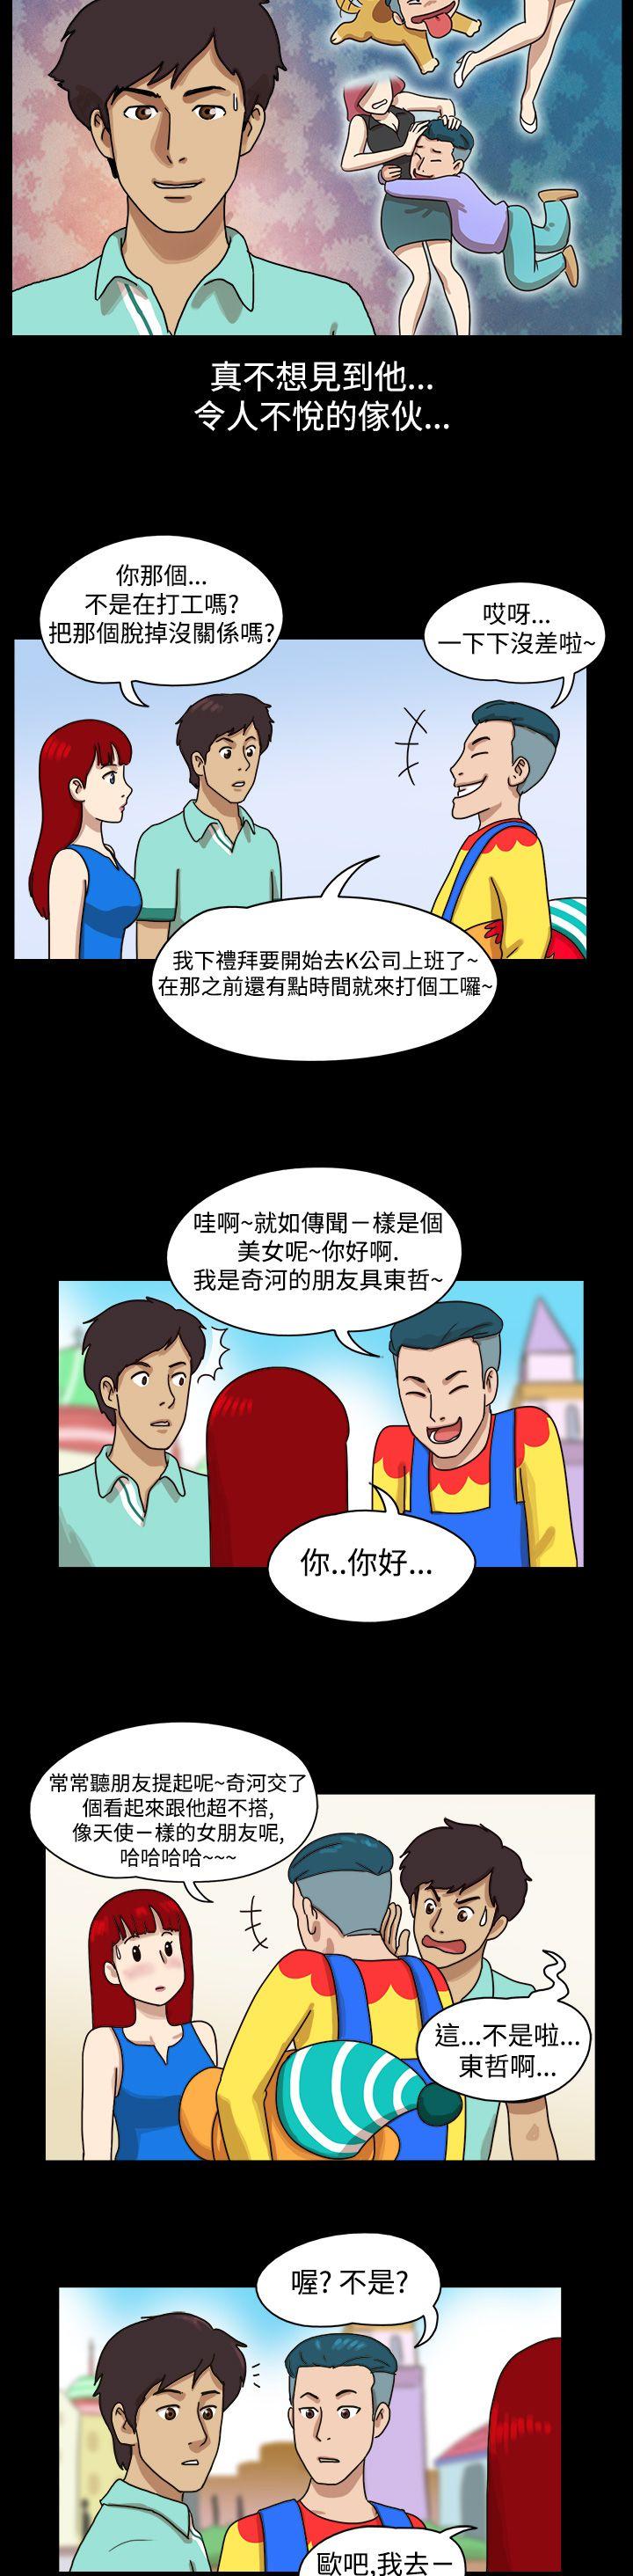 韩国污漫画 17種性幻想第一季 第8话 2